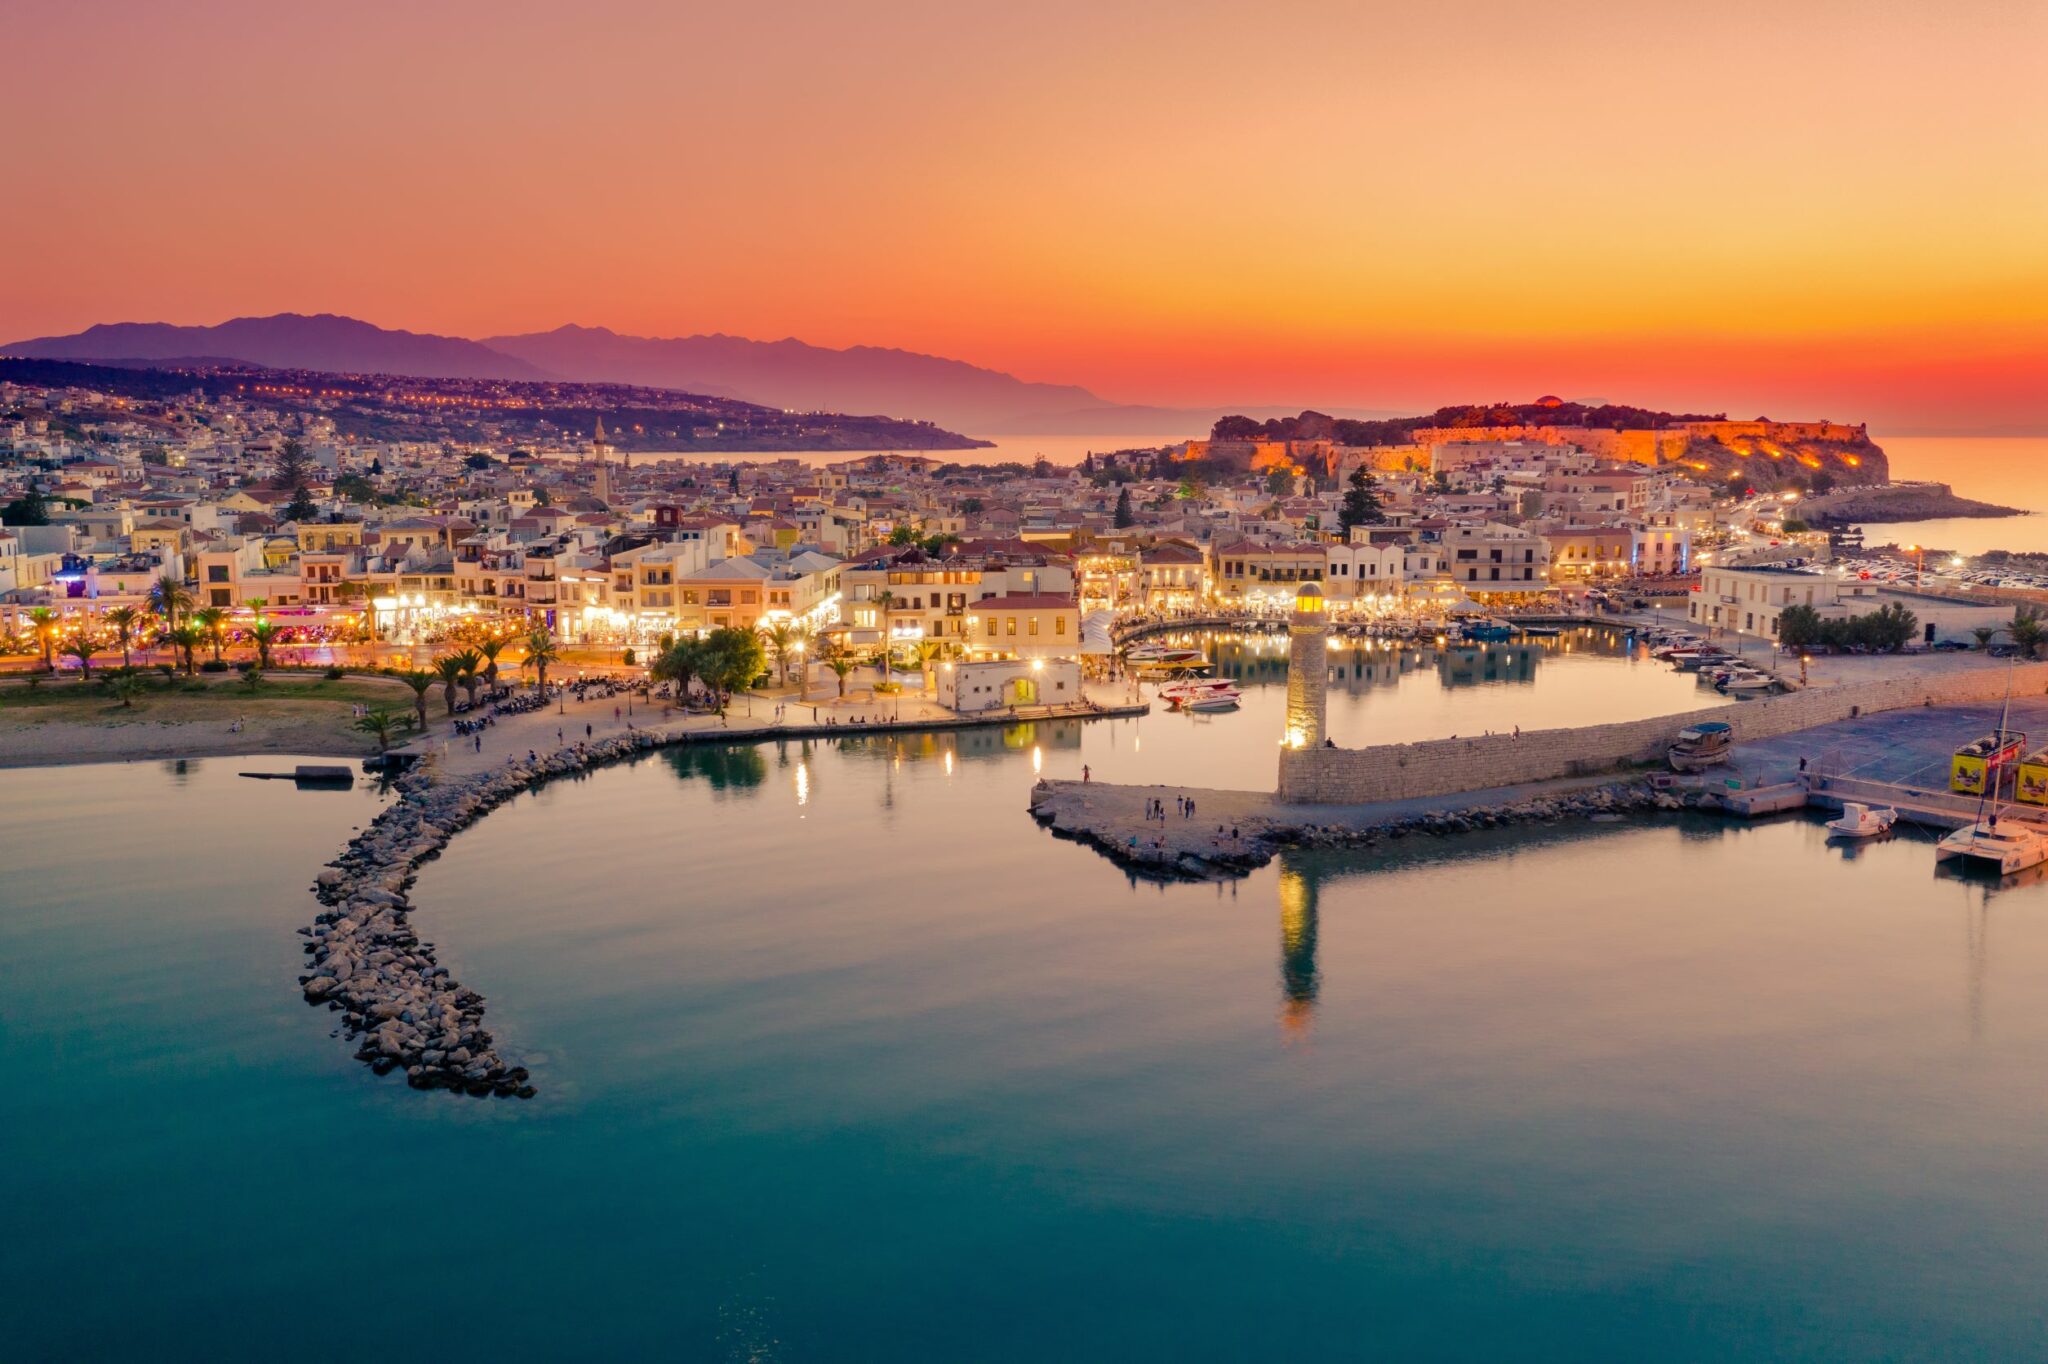 Travel & Leisure: H Κρήτη στους 50 καλύτερους ταξιδιωτικούς προορισμούς στον κόσμο για το 2022 | travel.gr